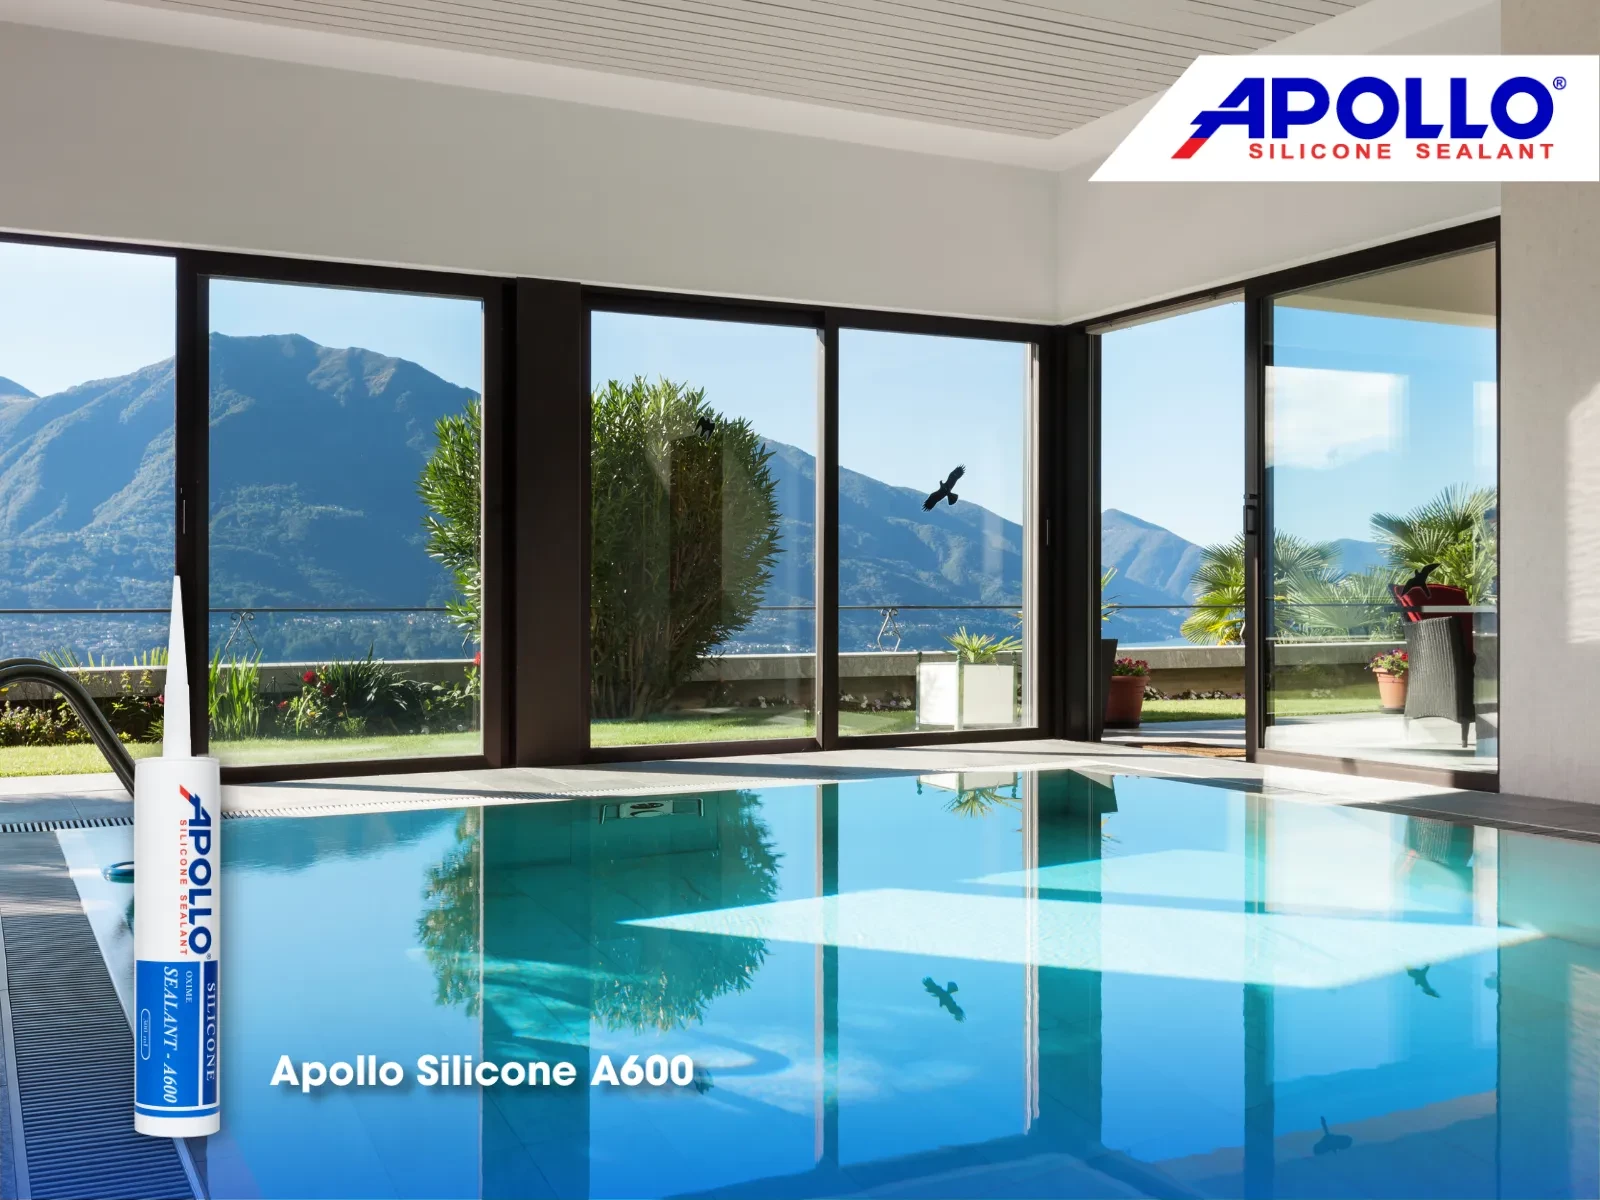 Apollo Silicone A600 sẽ giúp bạn giải quyết những vấn đề bít trám chống thấm cực hiệu quả